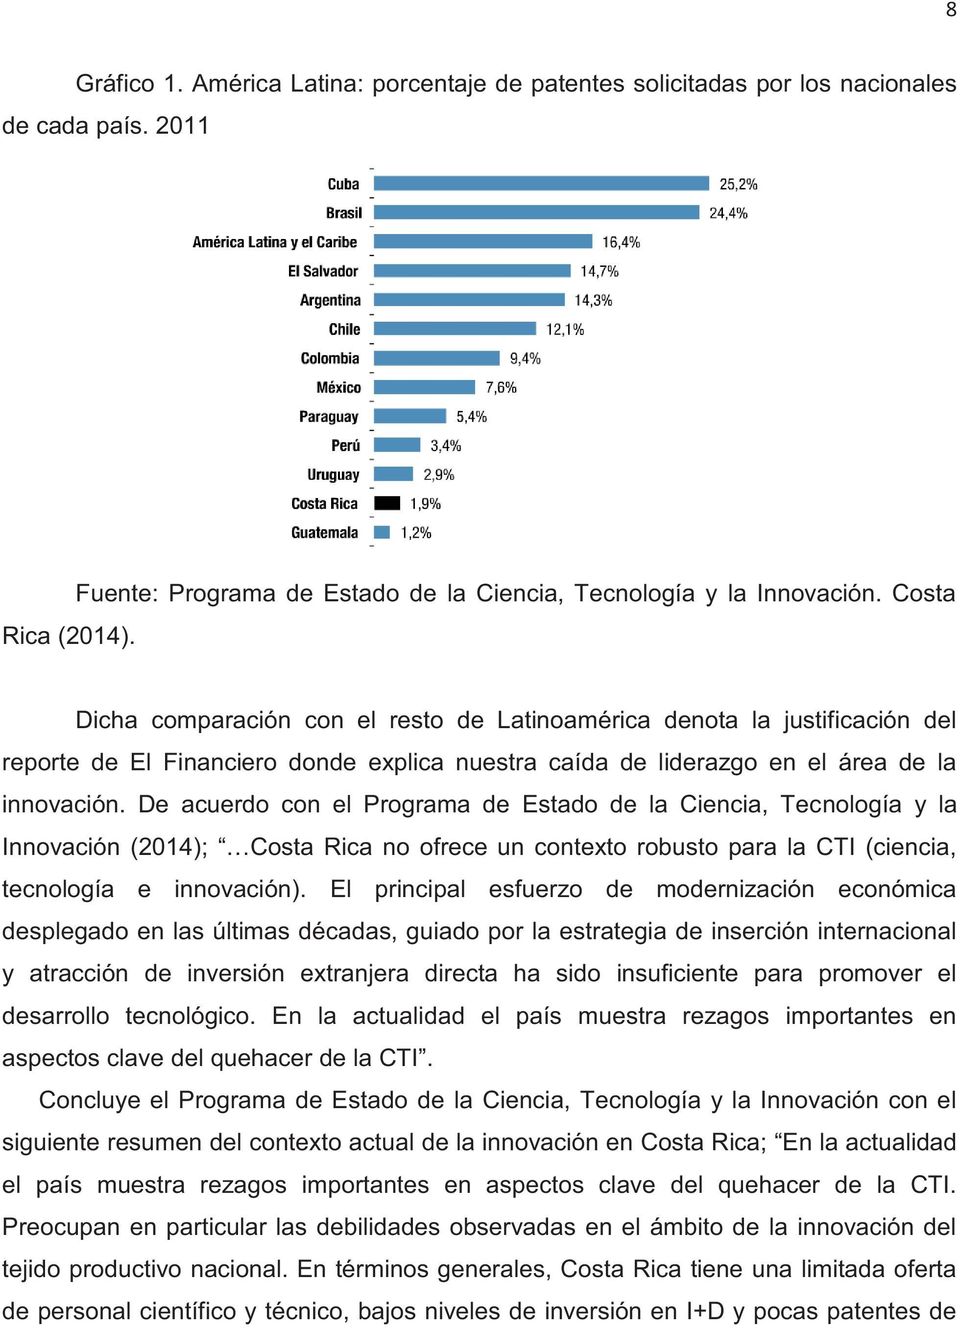 De acuerdo con el Programa de Estado de la Ciencia, Tecnología y la Innovación (2014); Costa Rica no ofrece un contexto robusto para la CTI (ciencia, tecnología e innovación).